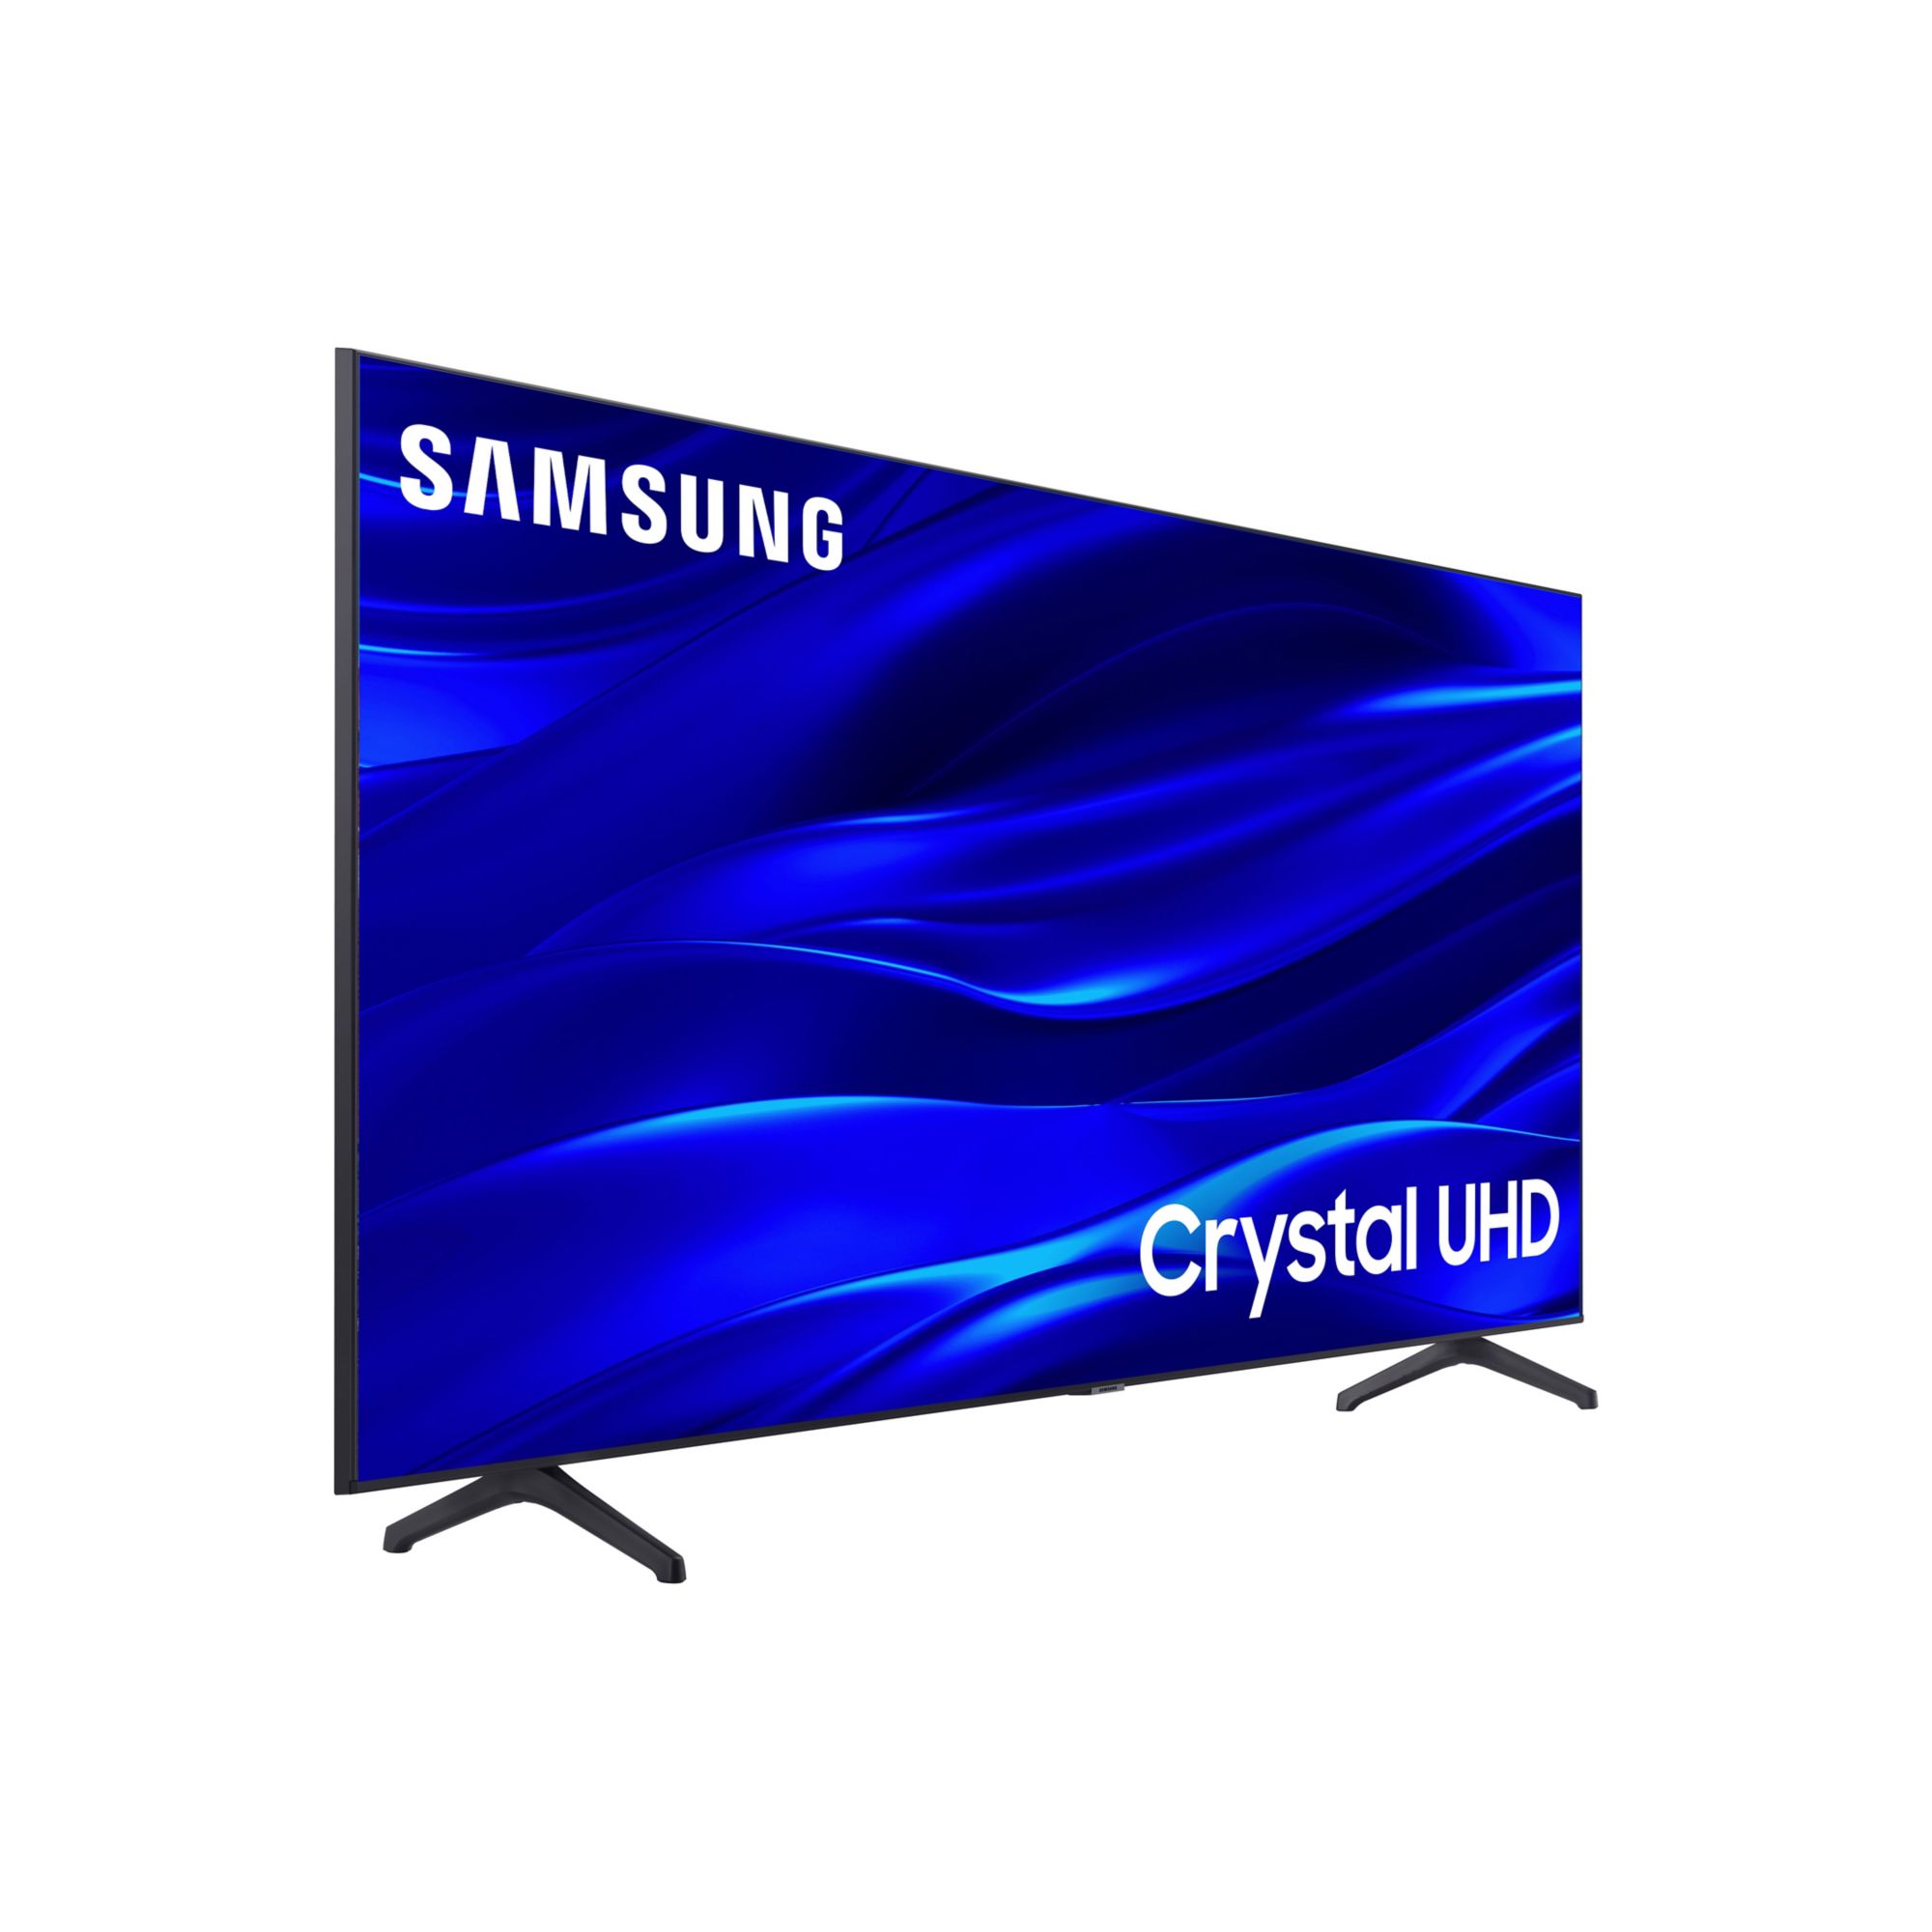 Televisor Samsung 43 pulgadas Crystal UHD 4K Ultra HD Smart TV SAMSUNG